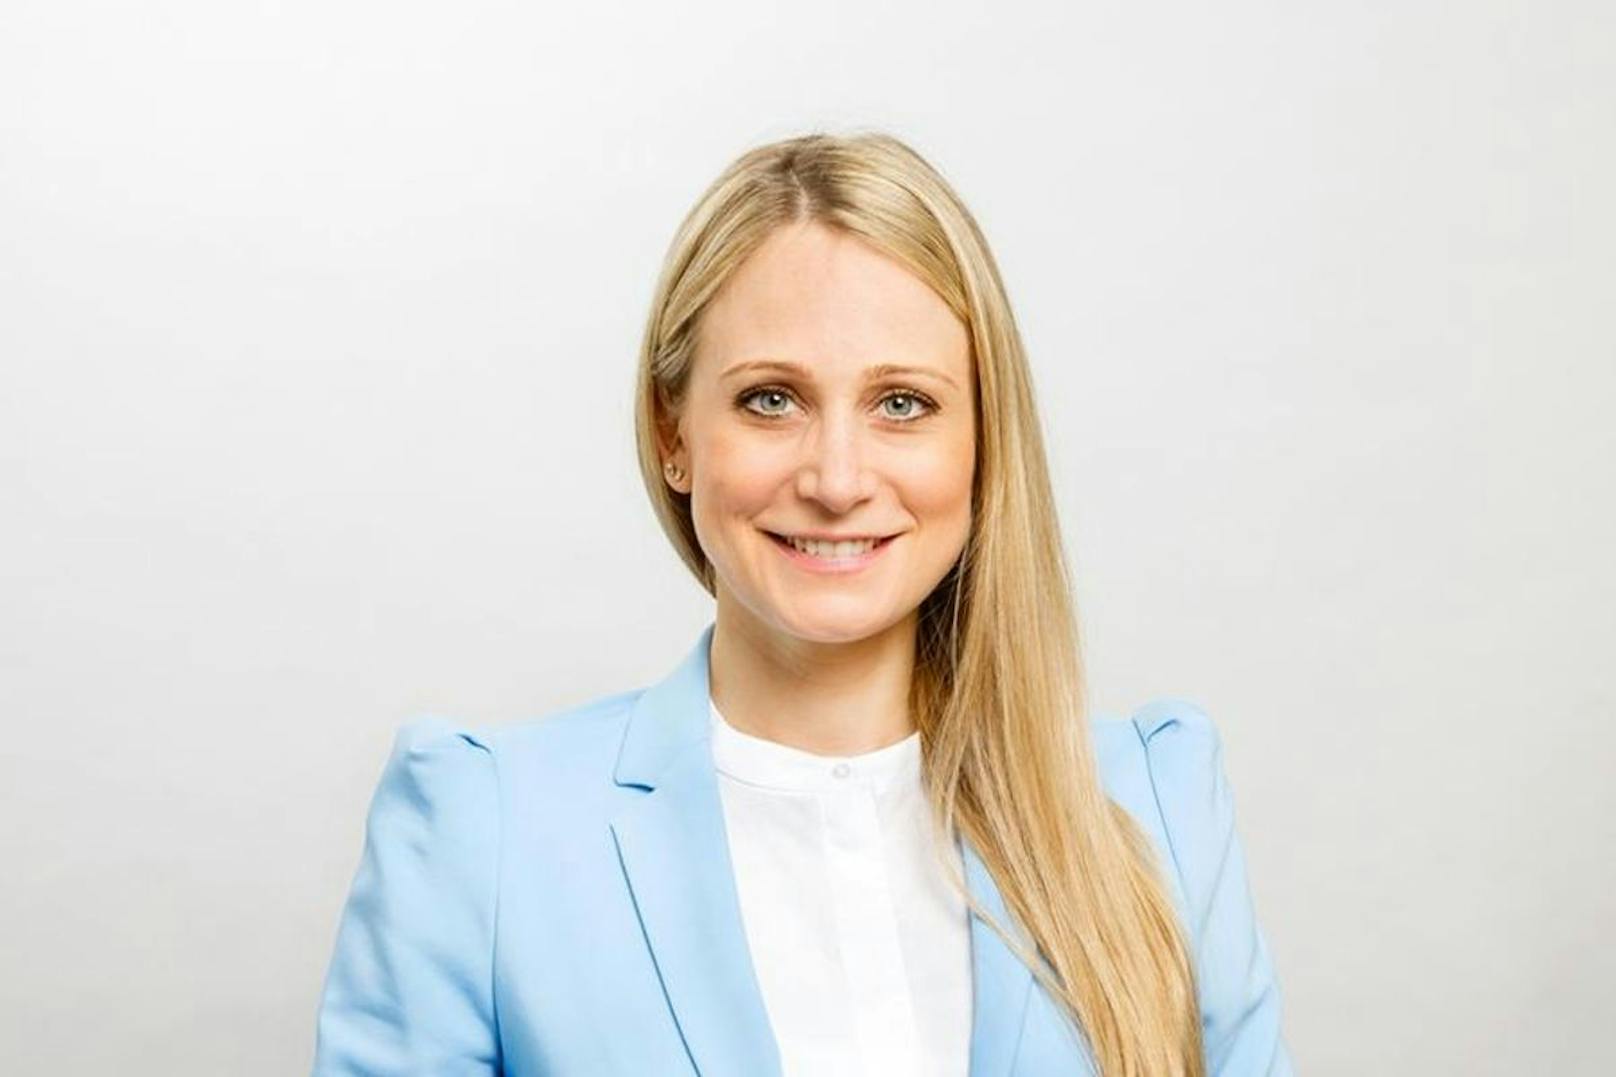 Nicole Steiner ist die Gründerin des Start-ups, das Exxy herstellt.